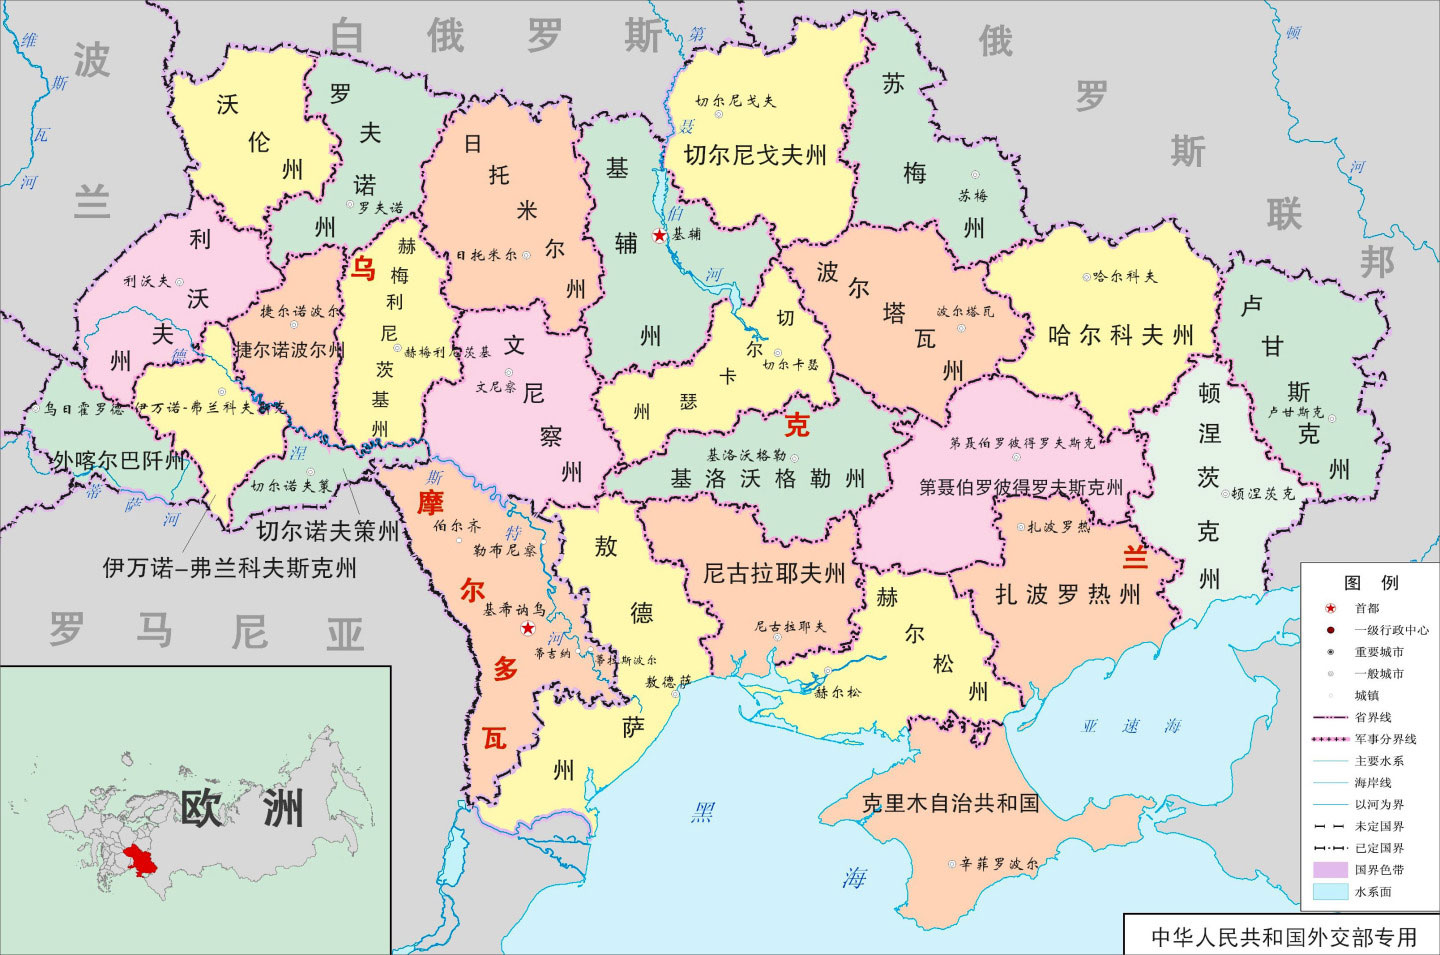 乌克兰地图_乌克兰地图中文版全图|乌克兰地图_乌克兰地图中文版全图全图高清版大图片|旅途风景图片网|www.visacits.com